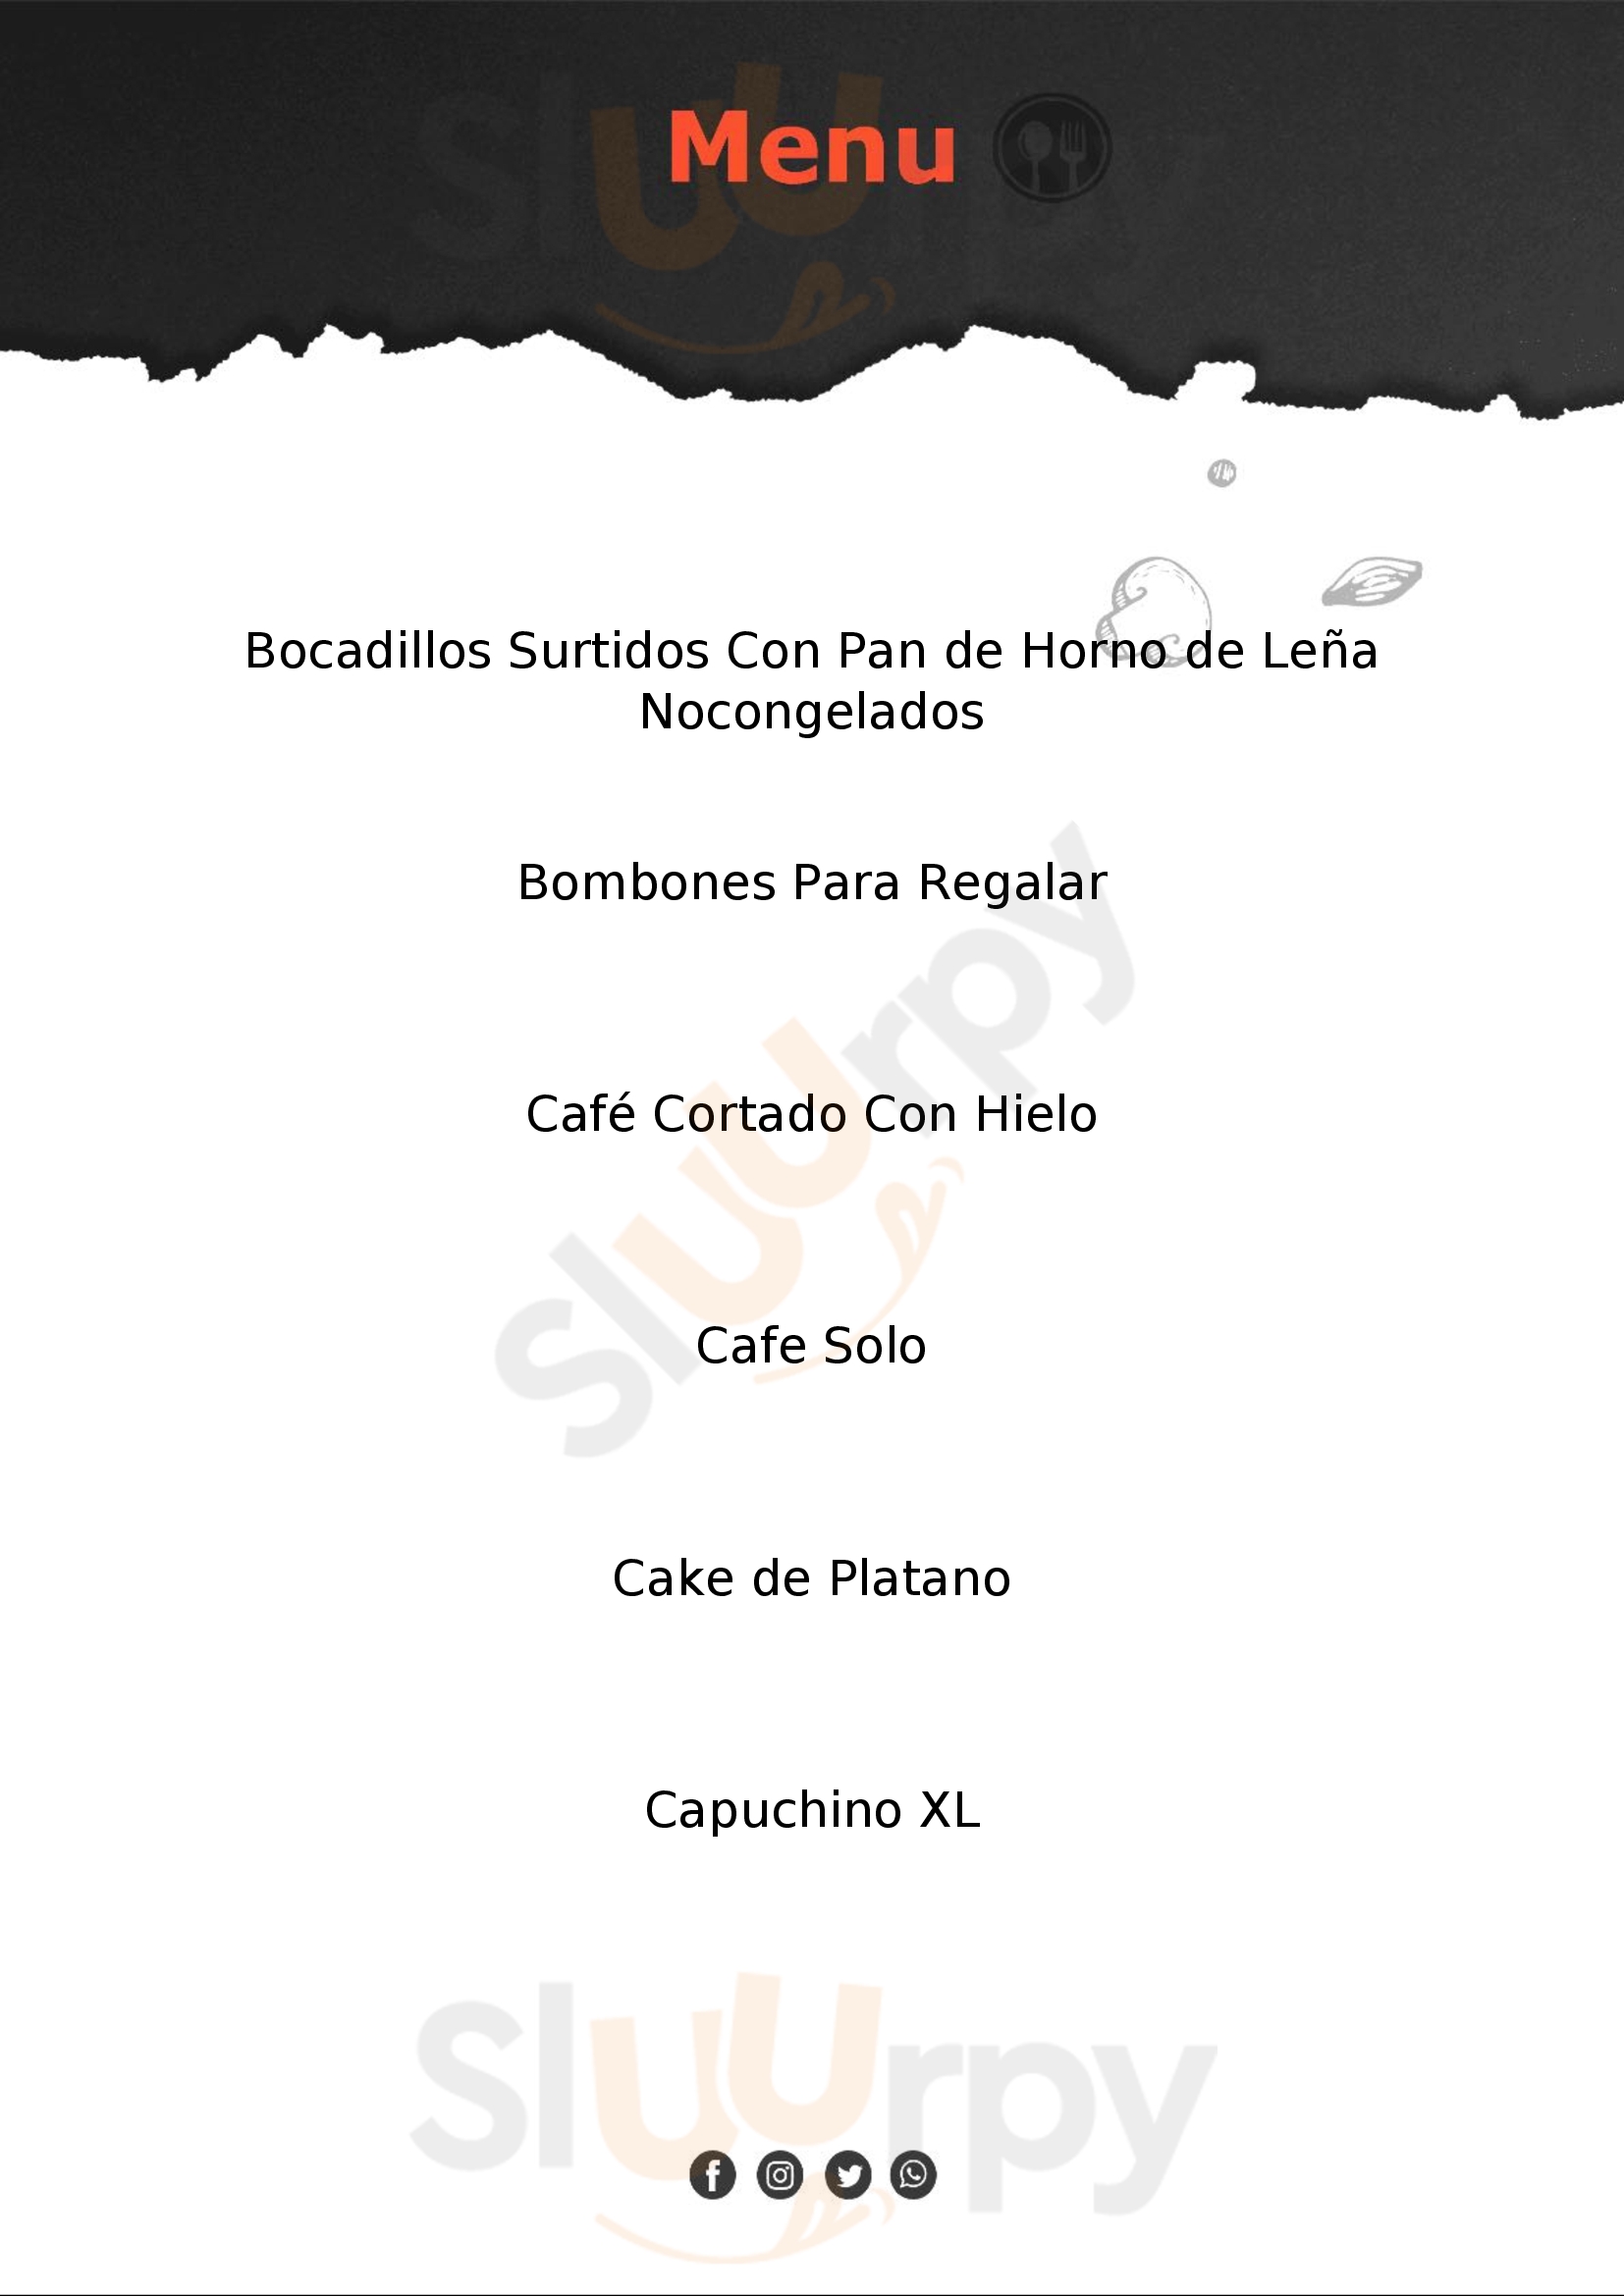 Cafe Veracruz - Riego De Agua A Coruña Menu - 1